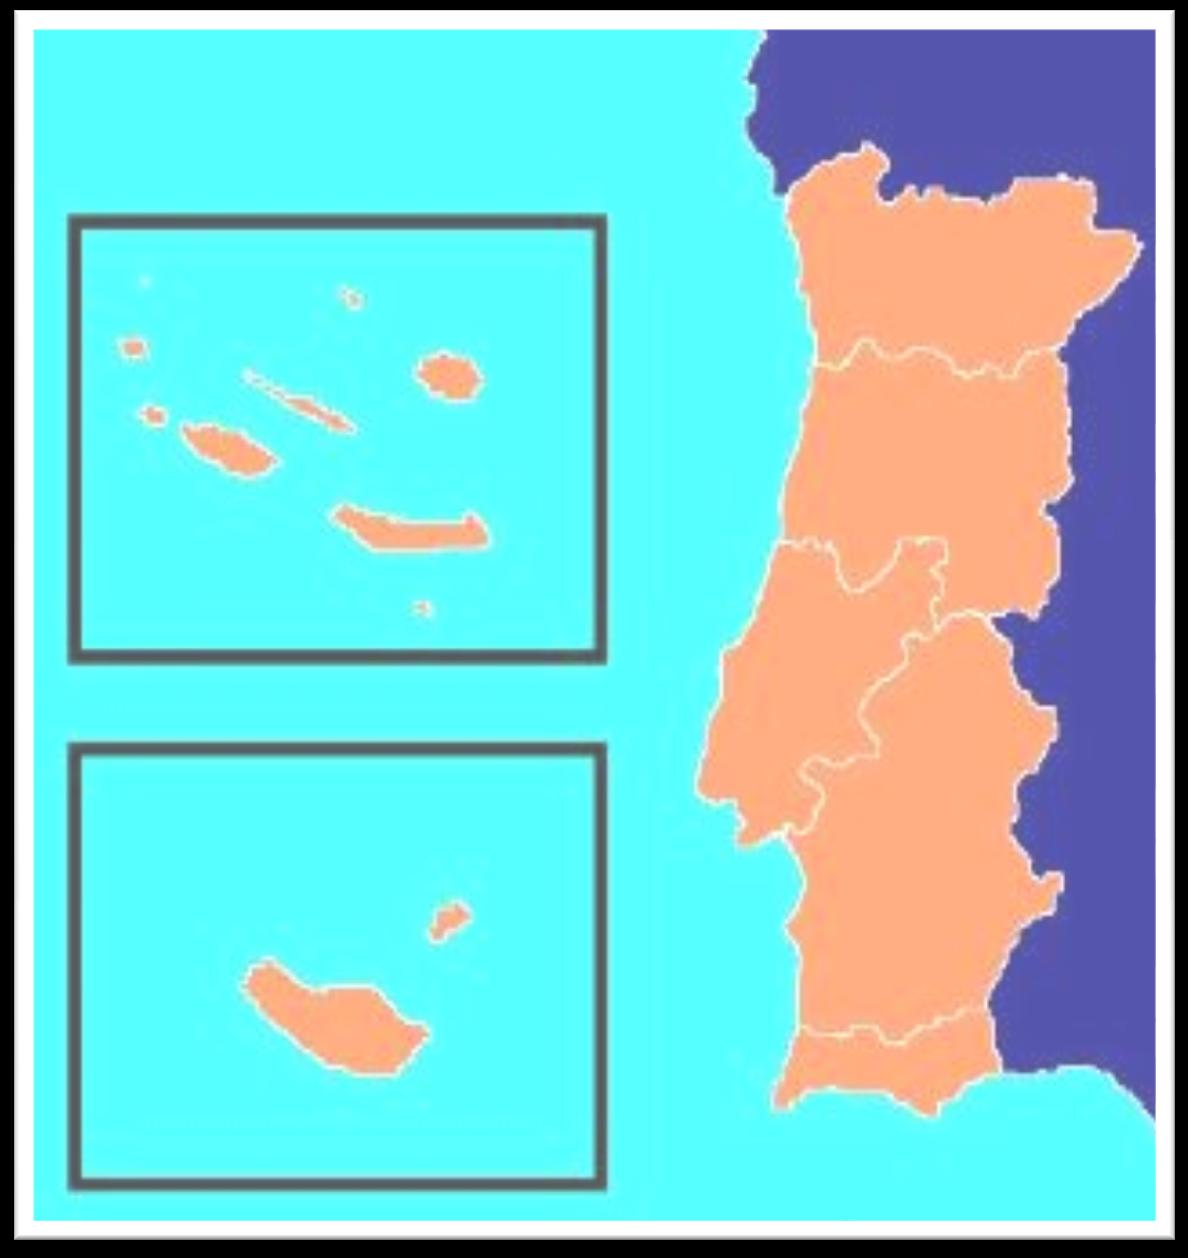 Portugal Continental está limitado a : - Norte e Este pela Espanha (1215 km de fronteira terrestre natural ( rio Minho, Douro, rio Tejo, e rio Guadiana) e fronteira terrestre